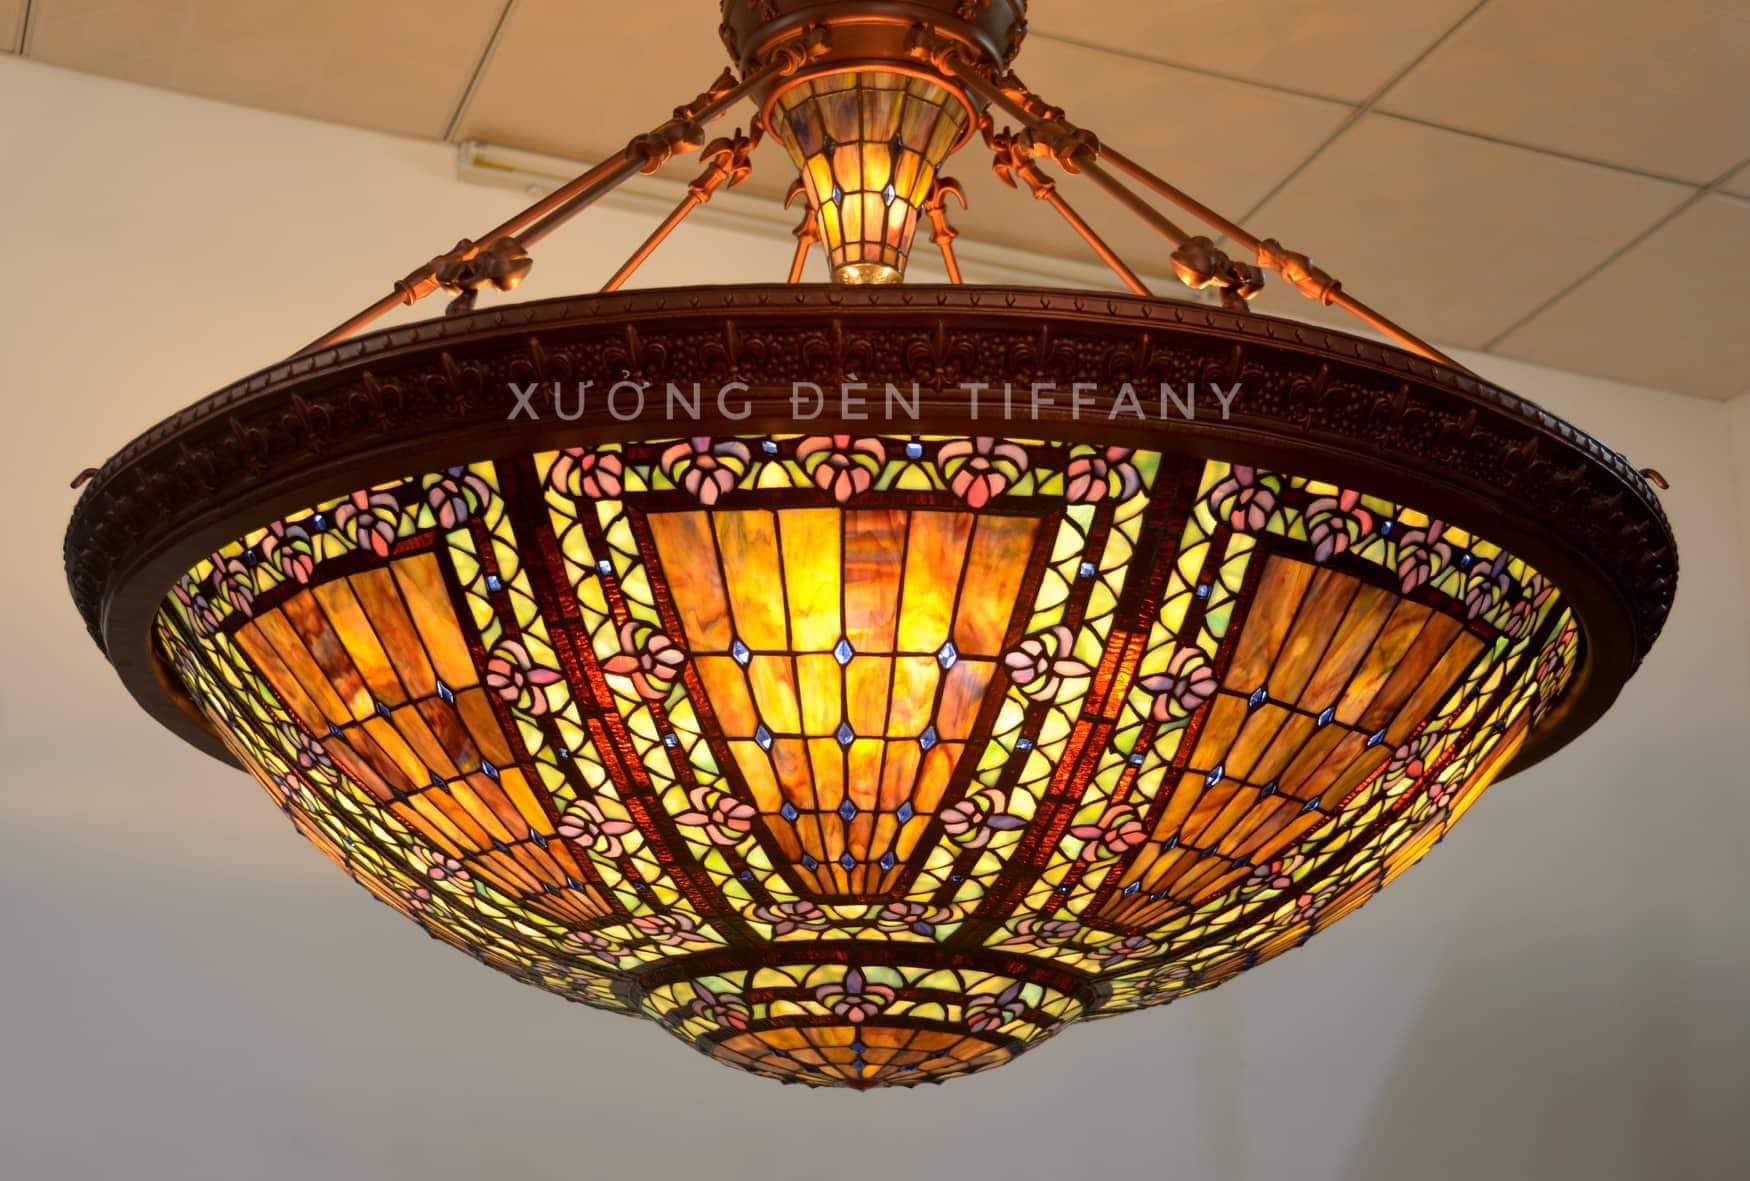 Đèn Tiffany ốp trần 110cm cực đẹp cho nhà lớn